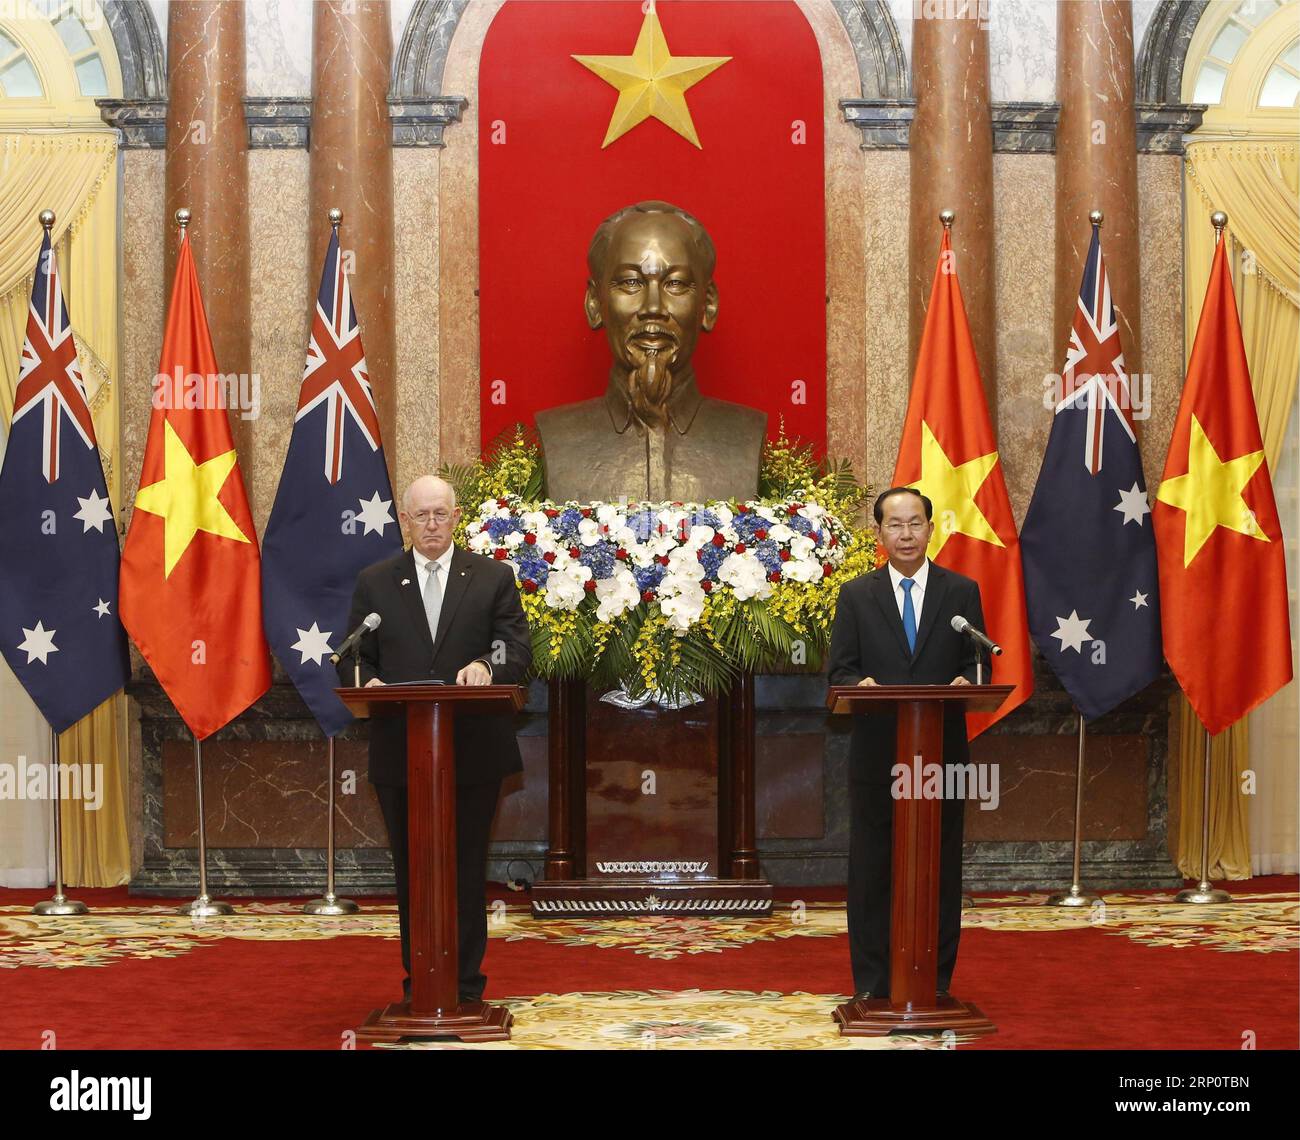 (180524) -- HANOI, 24 maggio 2018 -- il presidente vietnamita Tran dai Quang (R) e il governatore generale australiano Peter Cosgrove partecipano a una conferenza stampa ad Hanoi, capitale del Vietnam, il 24 maggio 2018. ) (lrz) VIETNAM-HANOI-AUSTRALIA-VISIT VNA PUBLICATIONxNOTxINxCHN Foto Stock